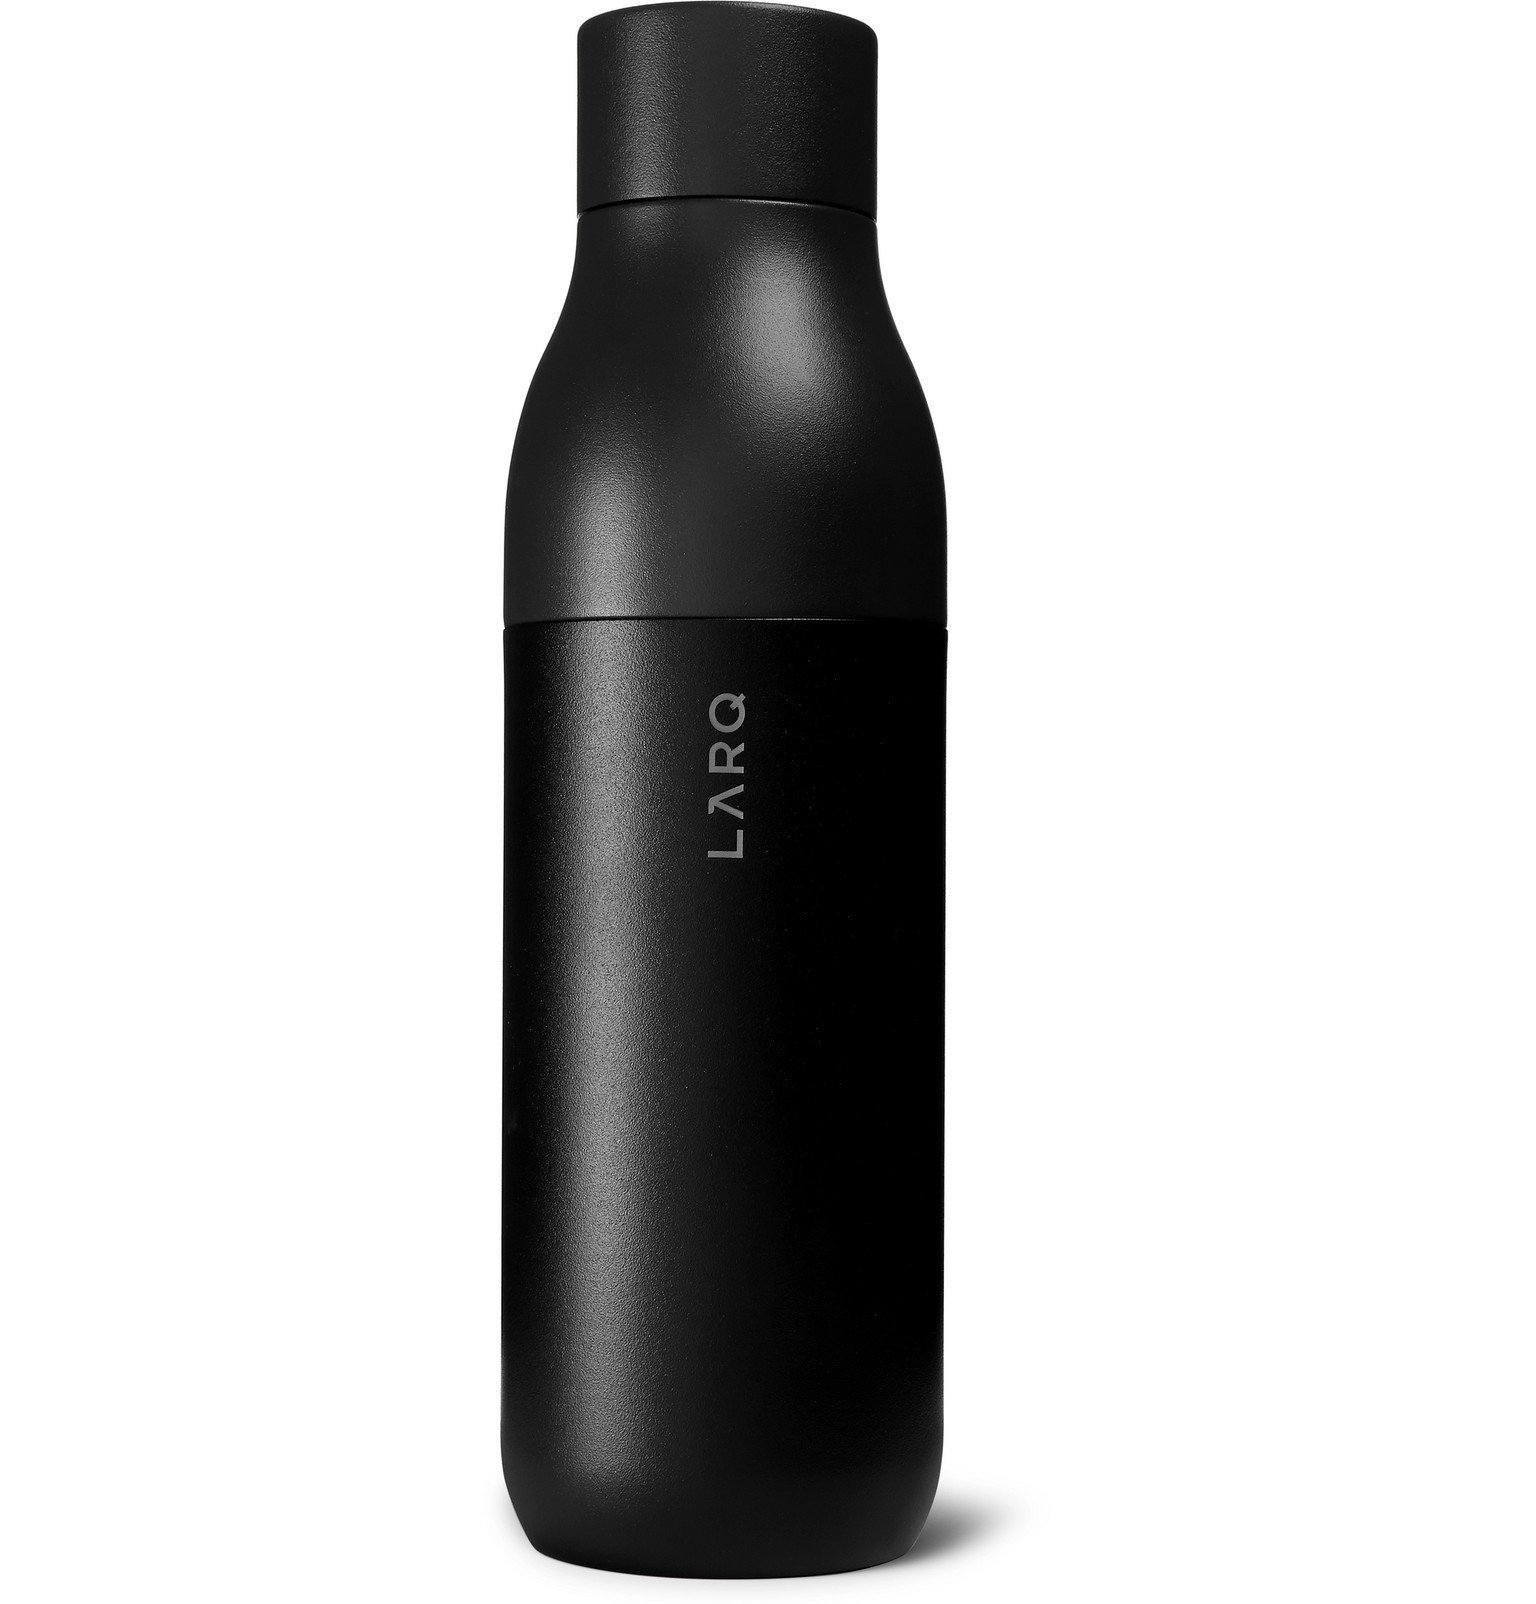 740ml black LARQ Bottle self-cleaning water bottle 